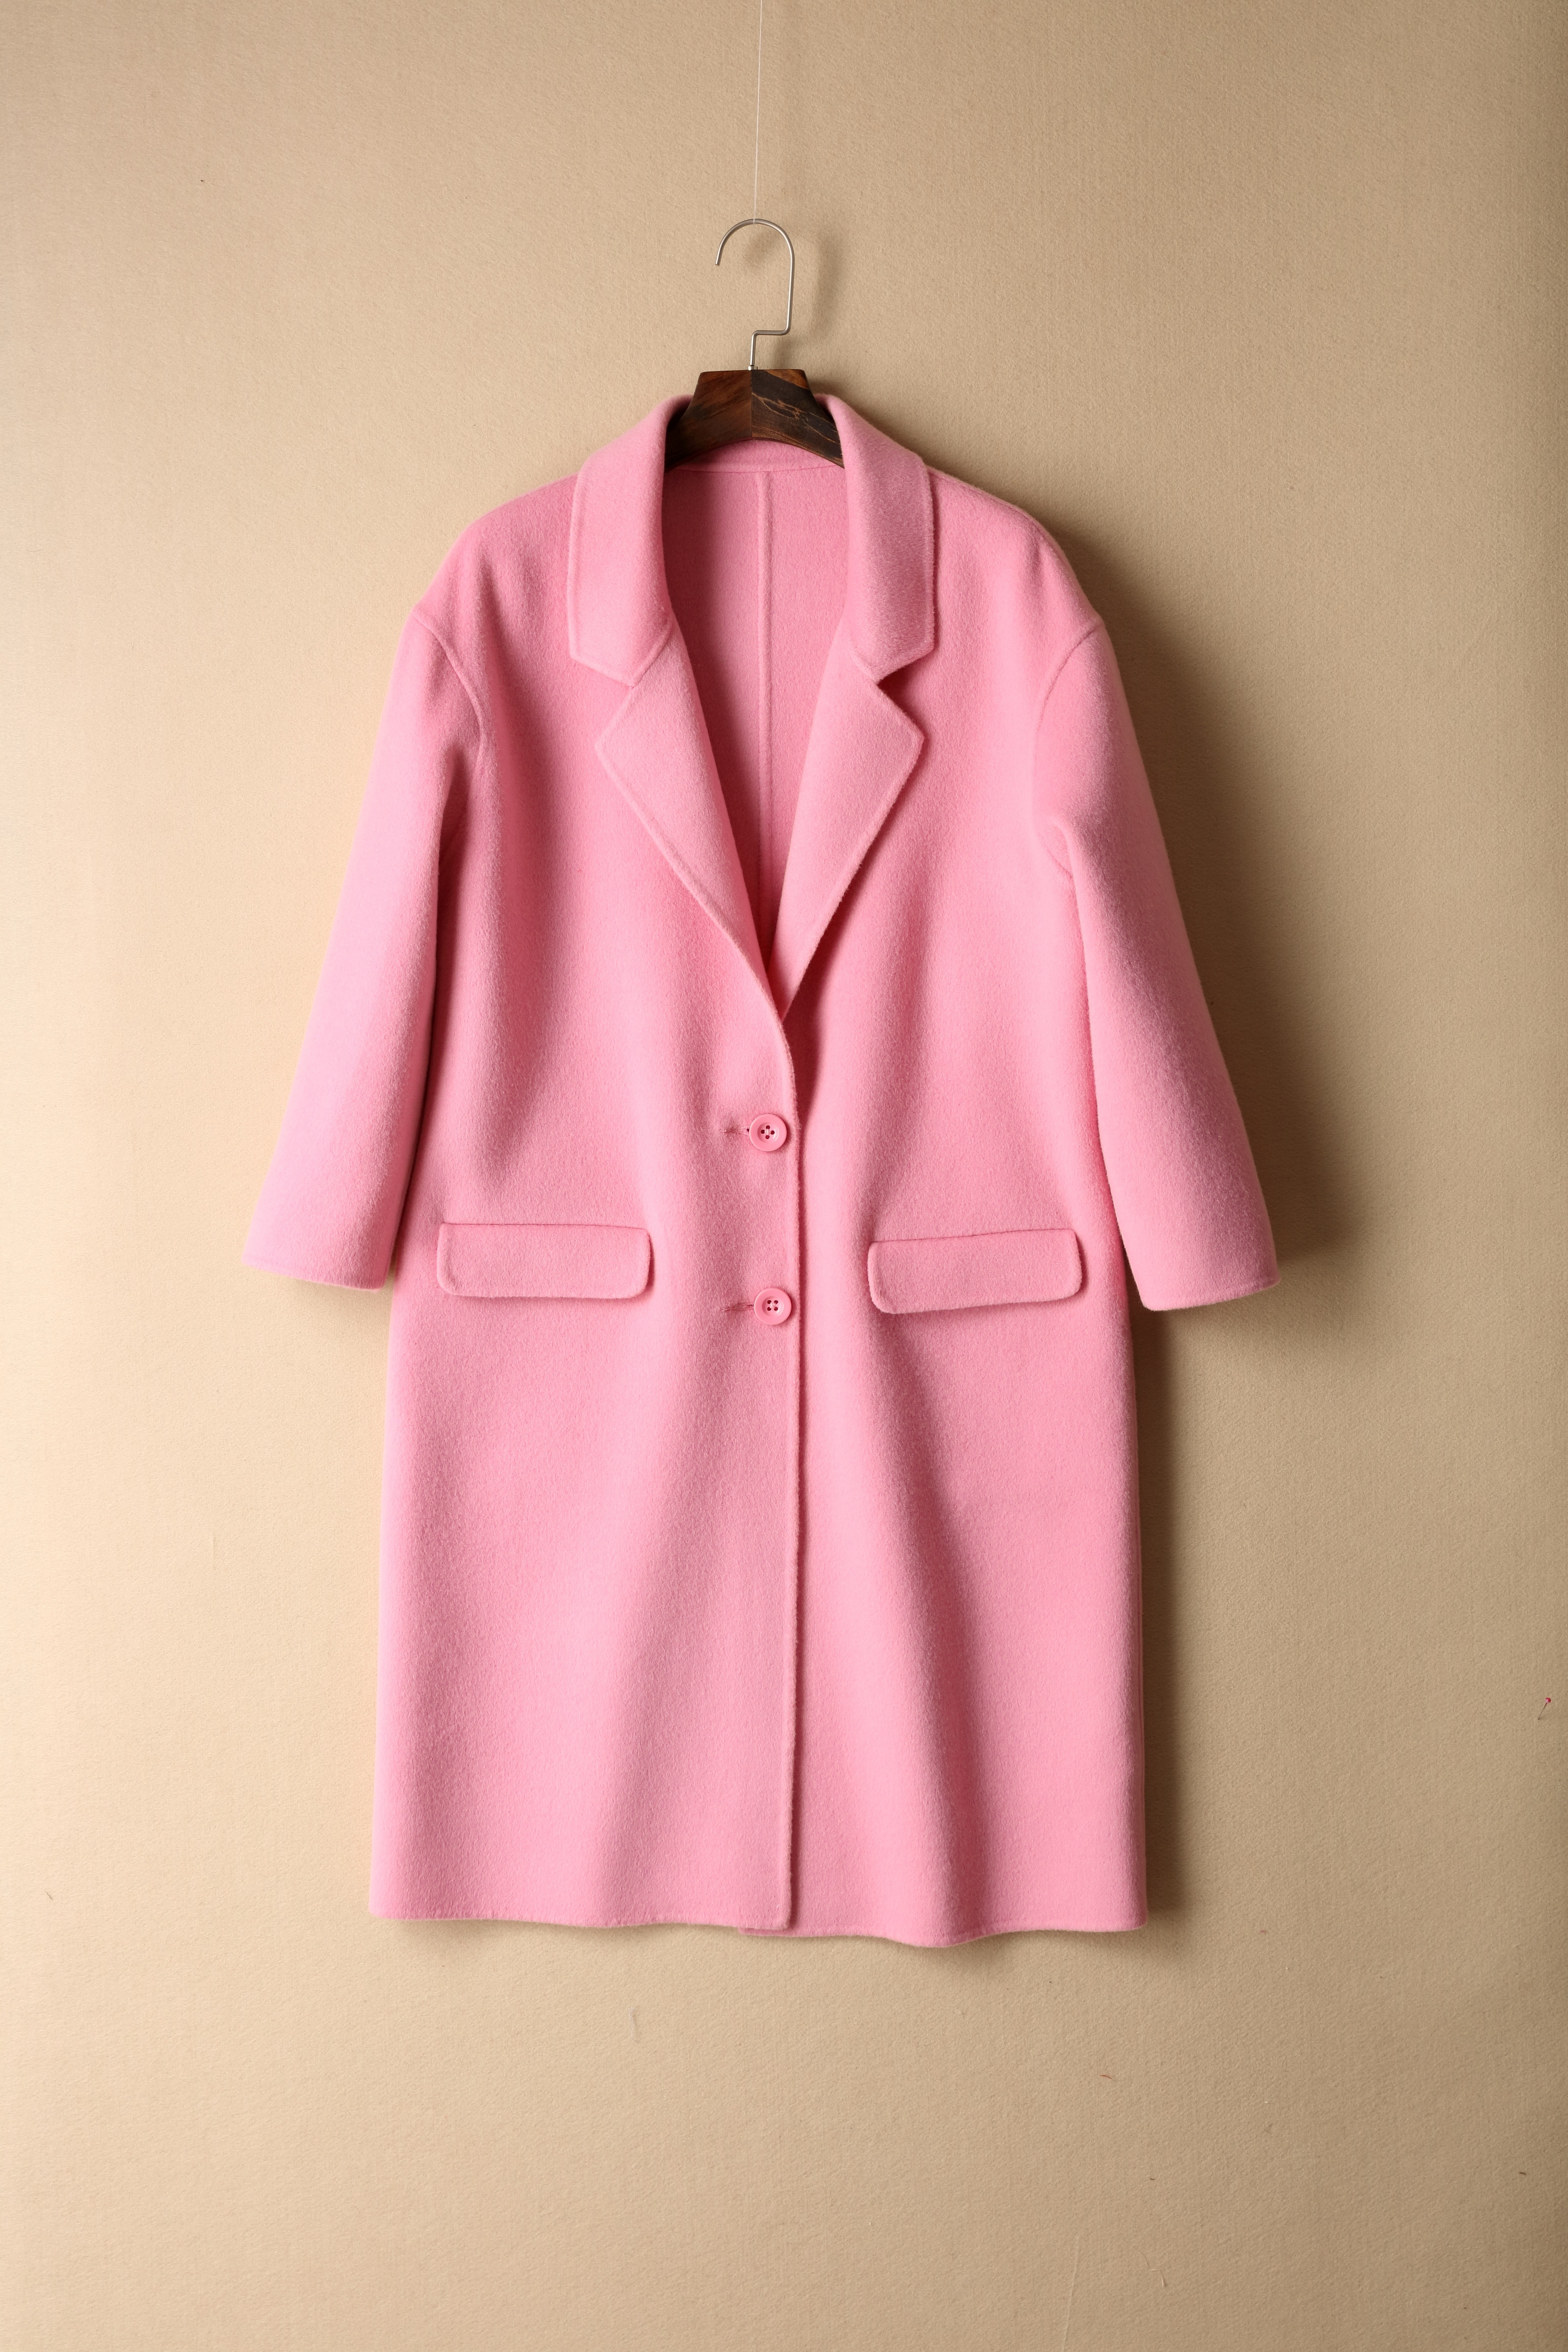 Clothing, Coat, Pink, Loading, Figure, clothing, coathanger